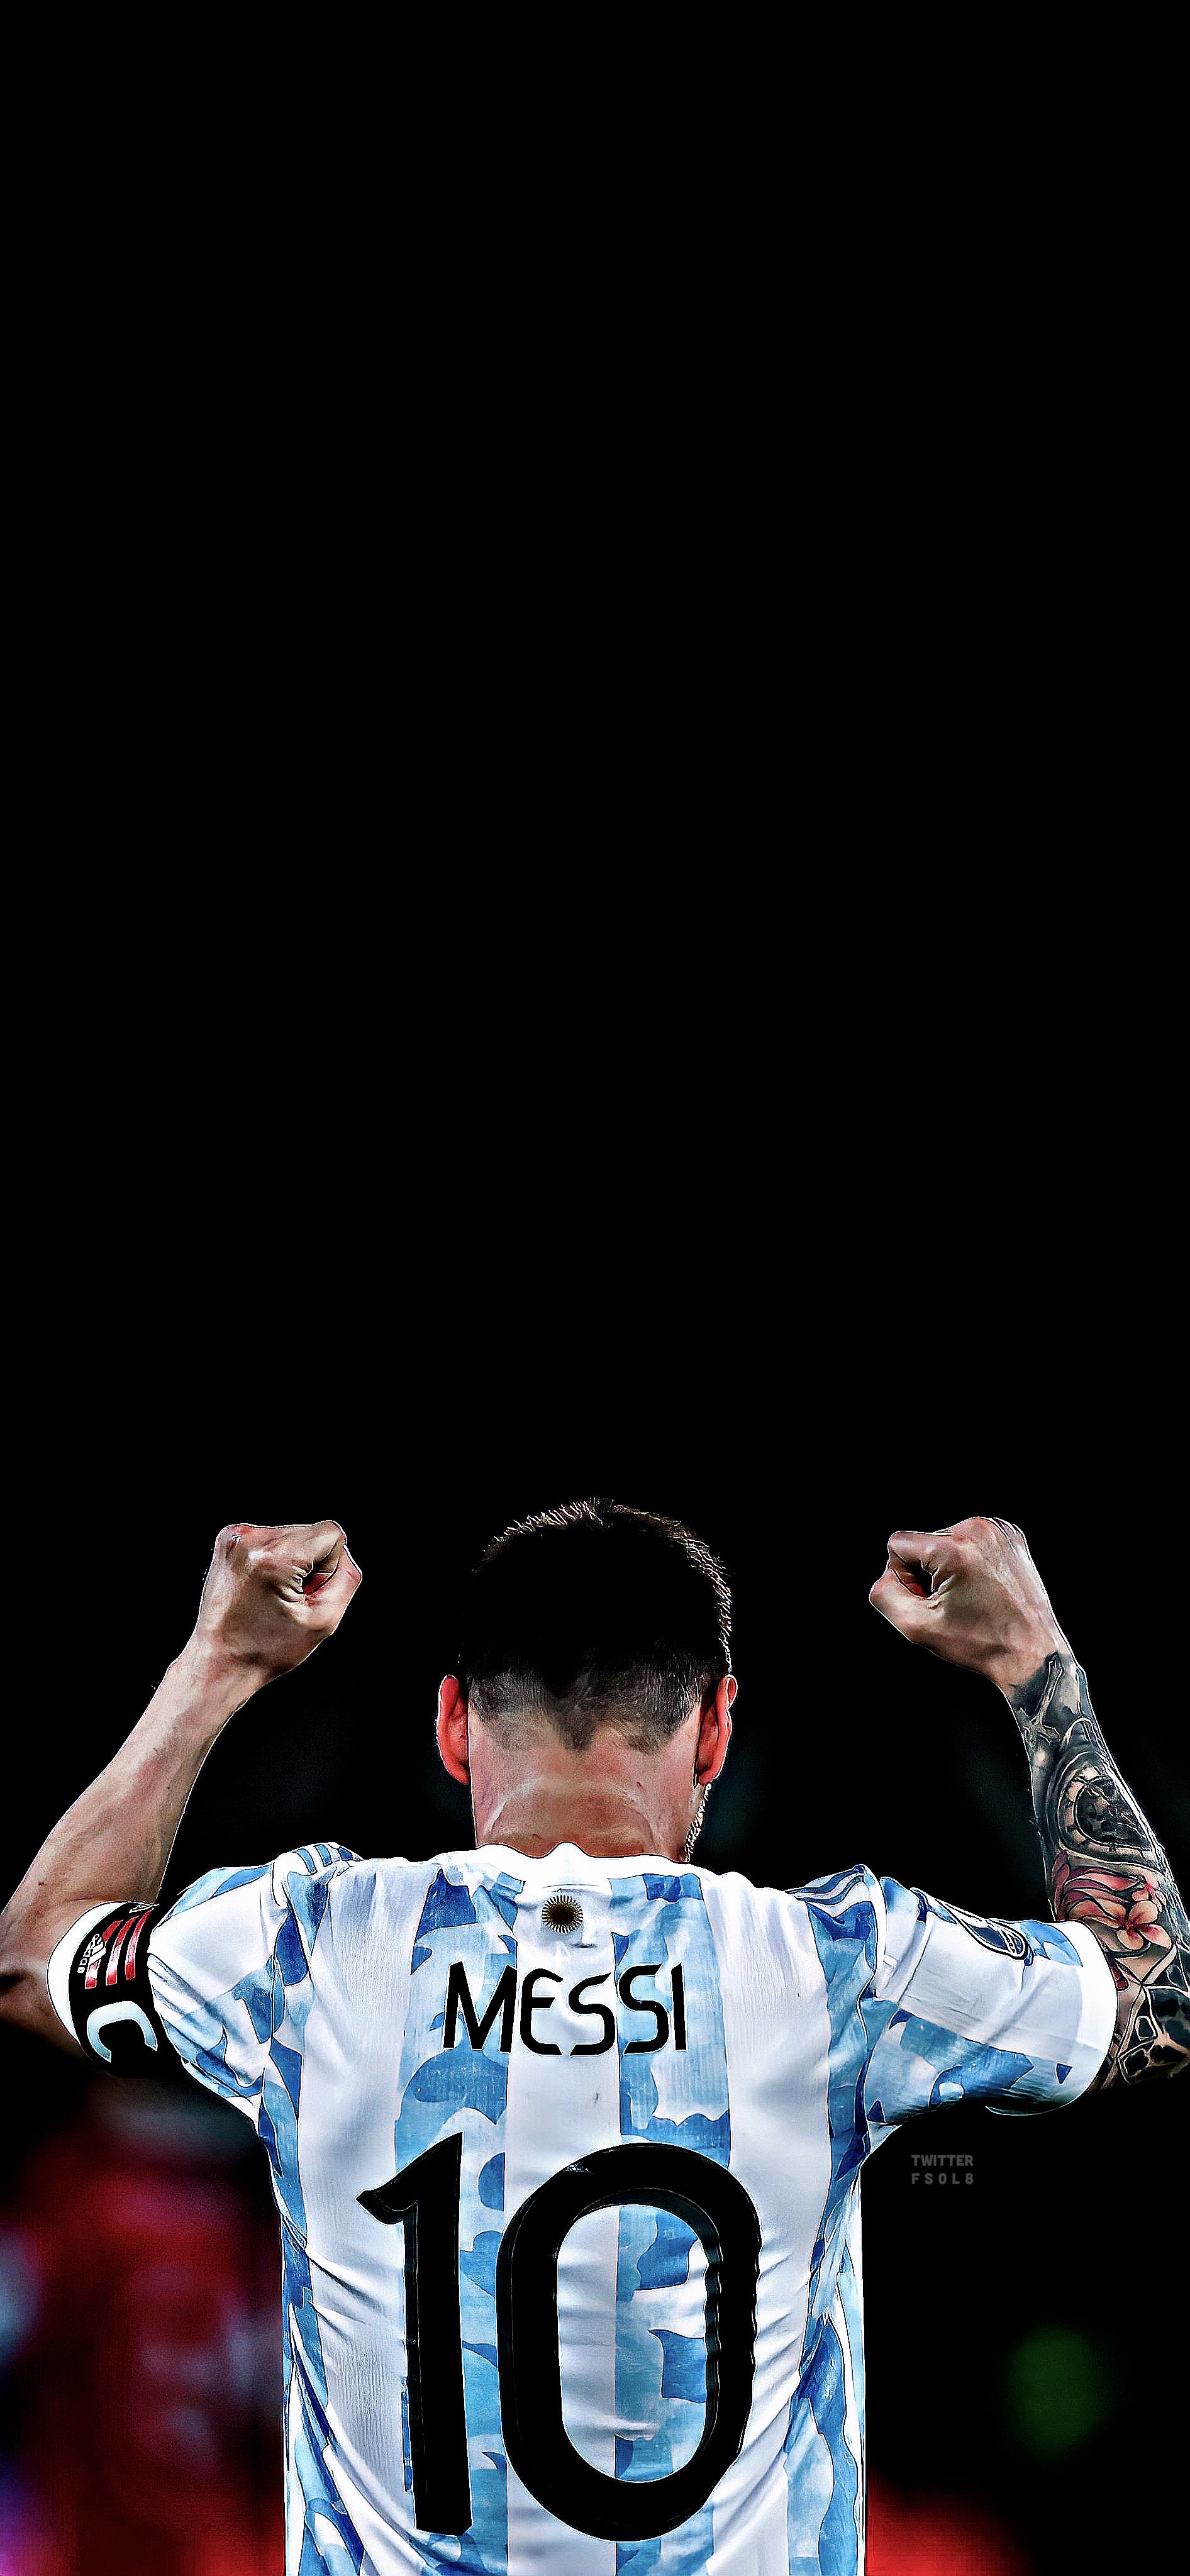 Hình nền Messi World Cup wallpaper sẽ đem lại cho bạn rất nhiều cảm xúc đặc biệt. Sức mạnh và tinh thần chiến đấu mãnh liệt của Messi đã lan tỏa trên toàn bộ các trận đấu tại World Cup